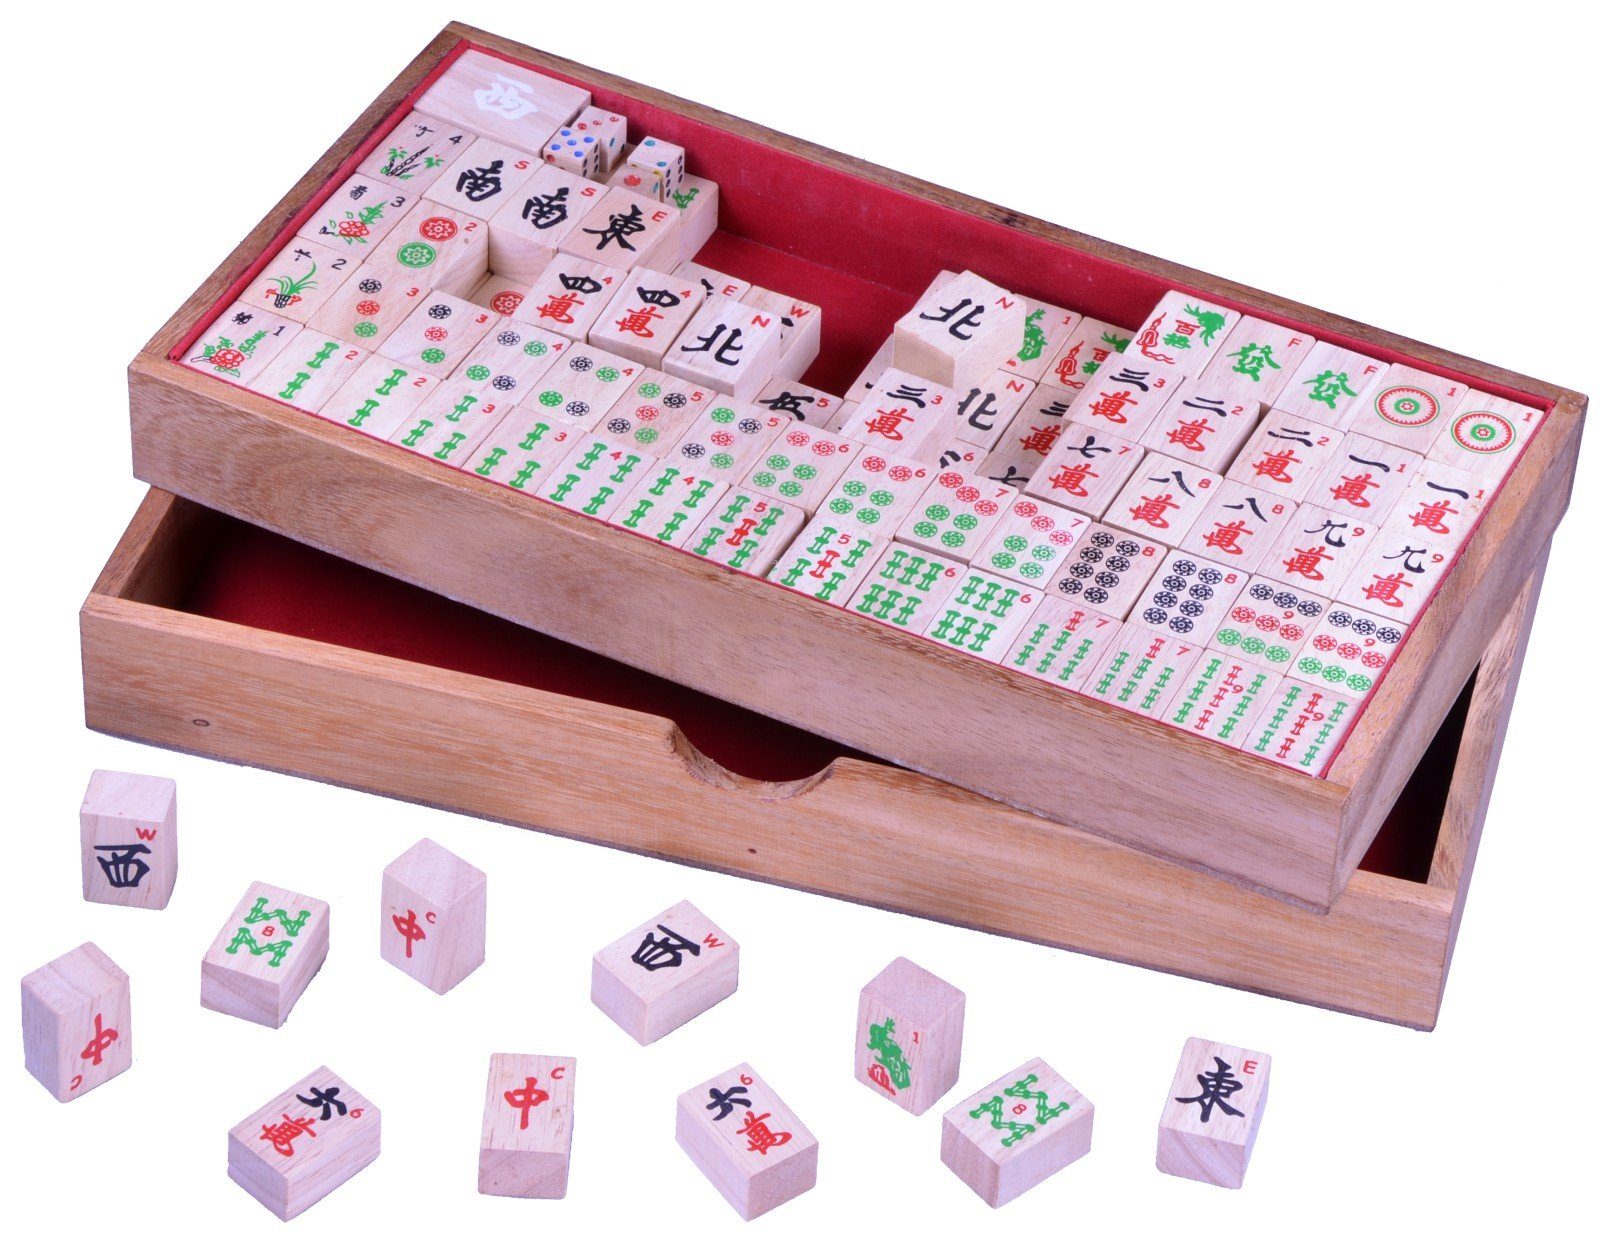 Logoplay Holzspiele Spiel, Mayong für 4 Spieler - 144 Spielsteine in einem Holzkasten Holzspielzeug